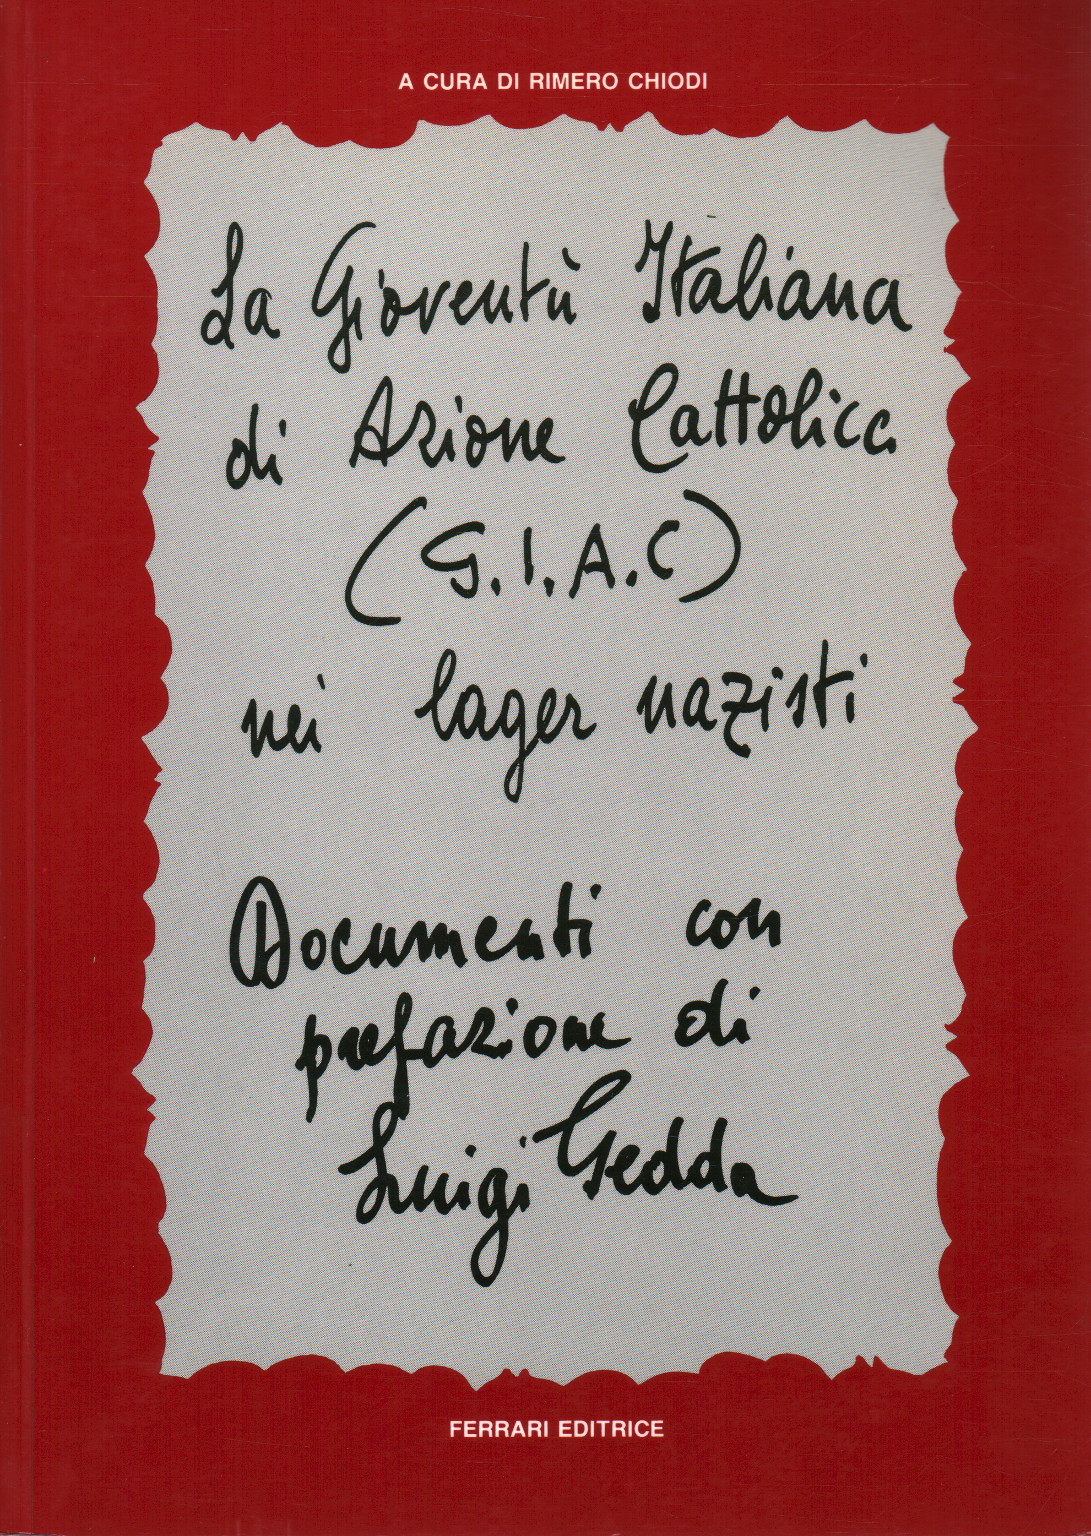 G. I. A. C.-jugend der italienischen katholischen Aktion, s.zu.